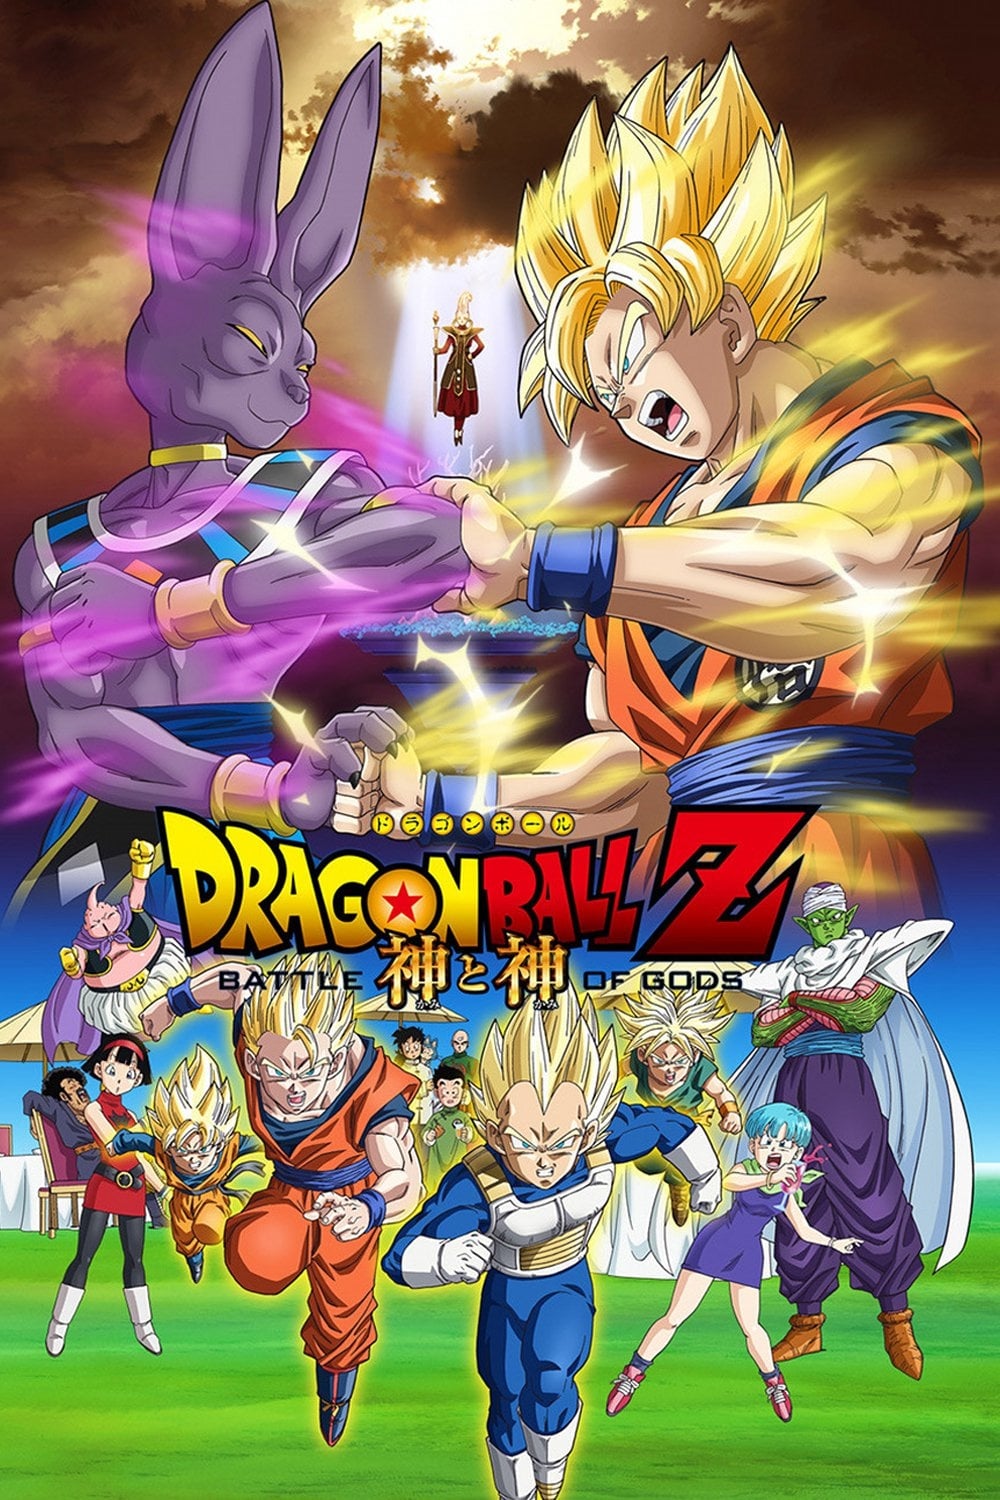 Dragon Ball Z: La Batalla de los Dioses (2013)